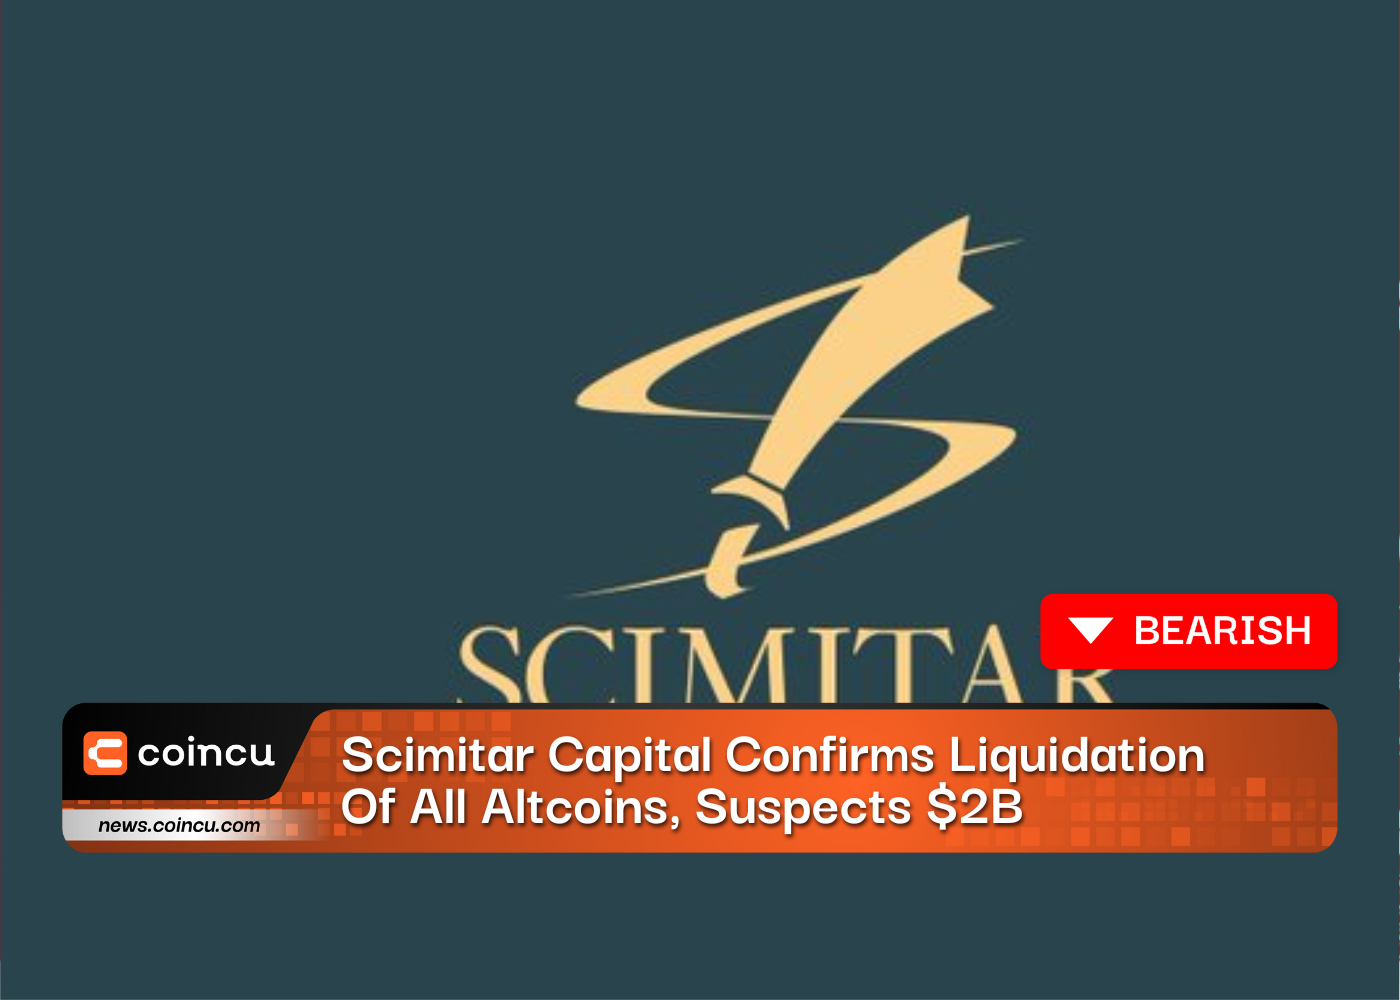 Scimitar Capital ने सभी Altcoins के परिसमापन की पुष्टि की, $ 2B के कारण बाजार में गिरावट का संदेह है